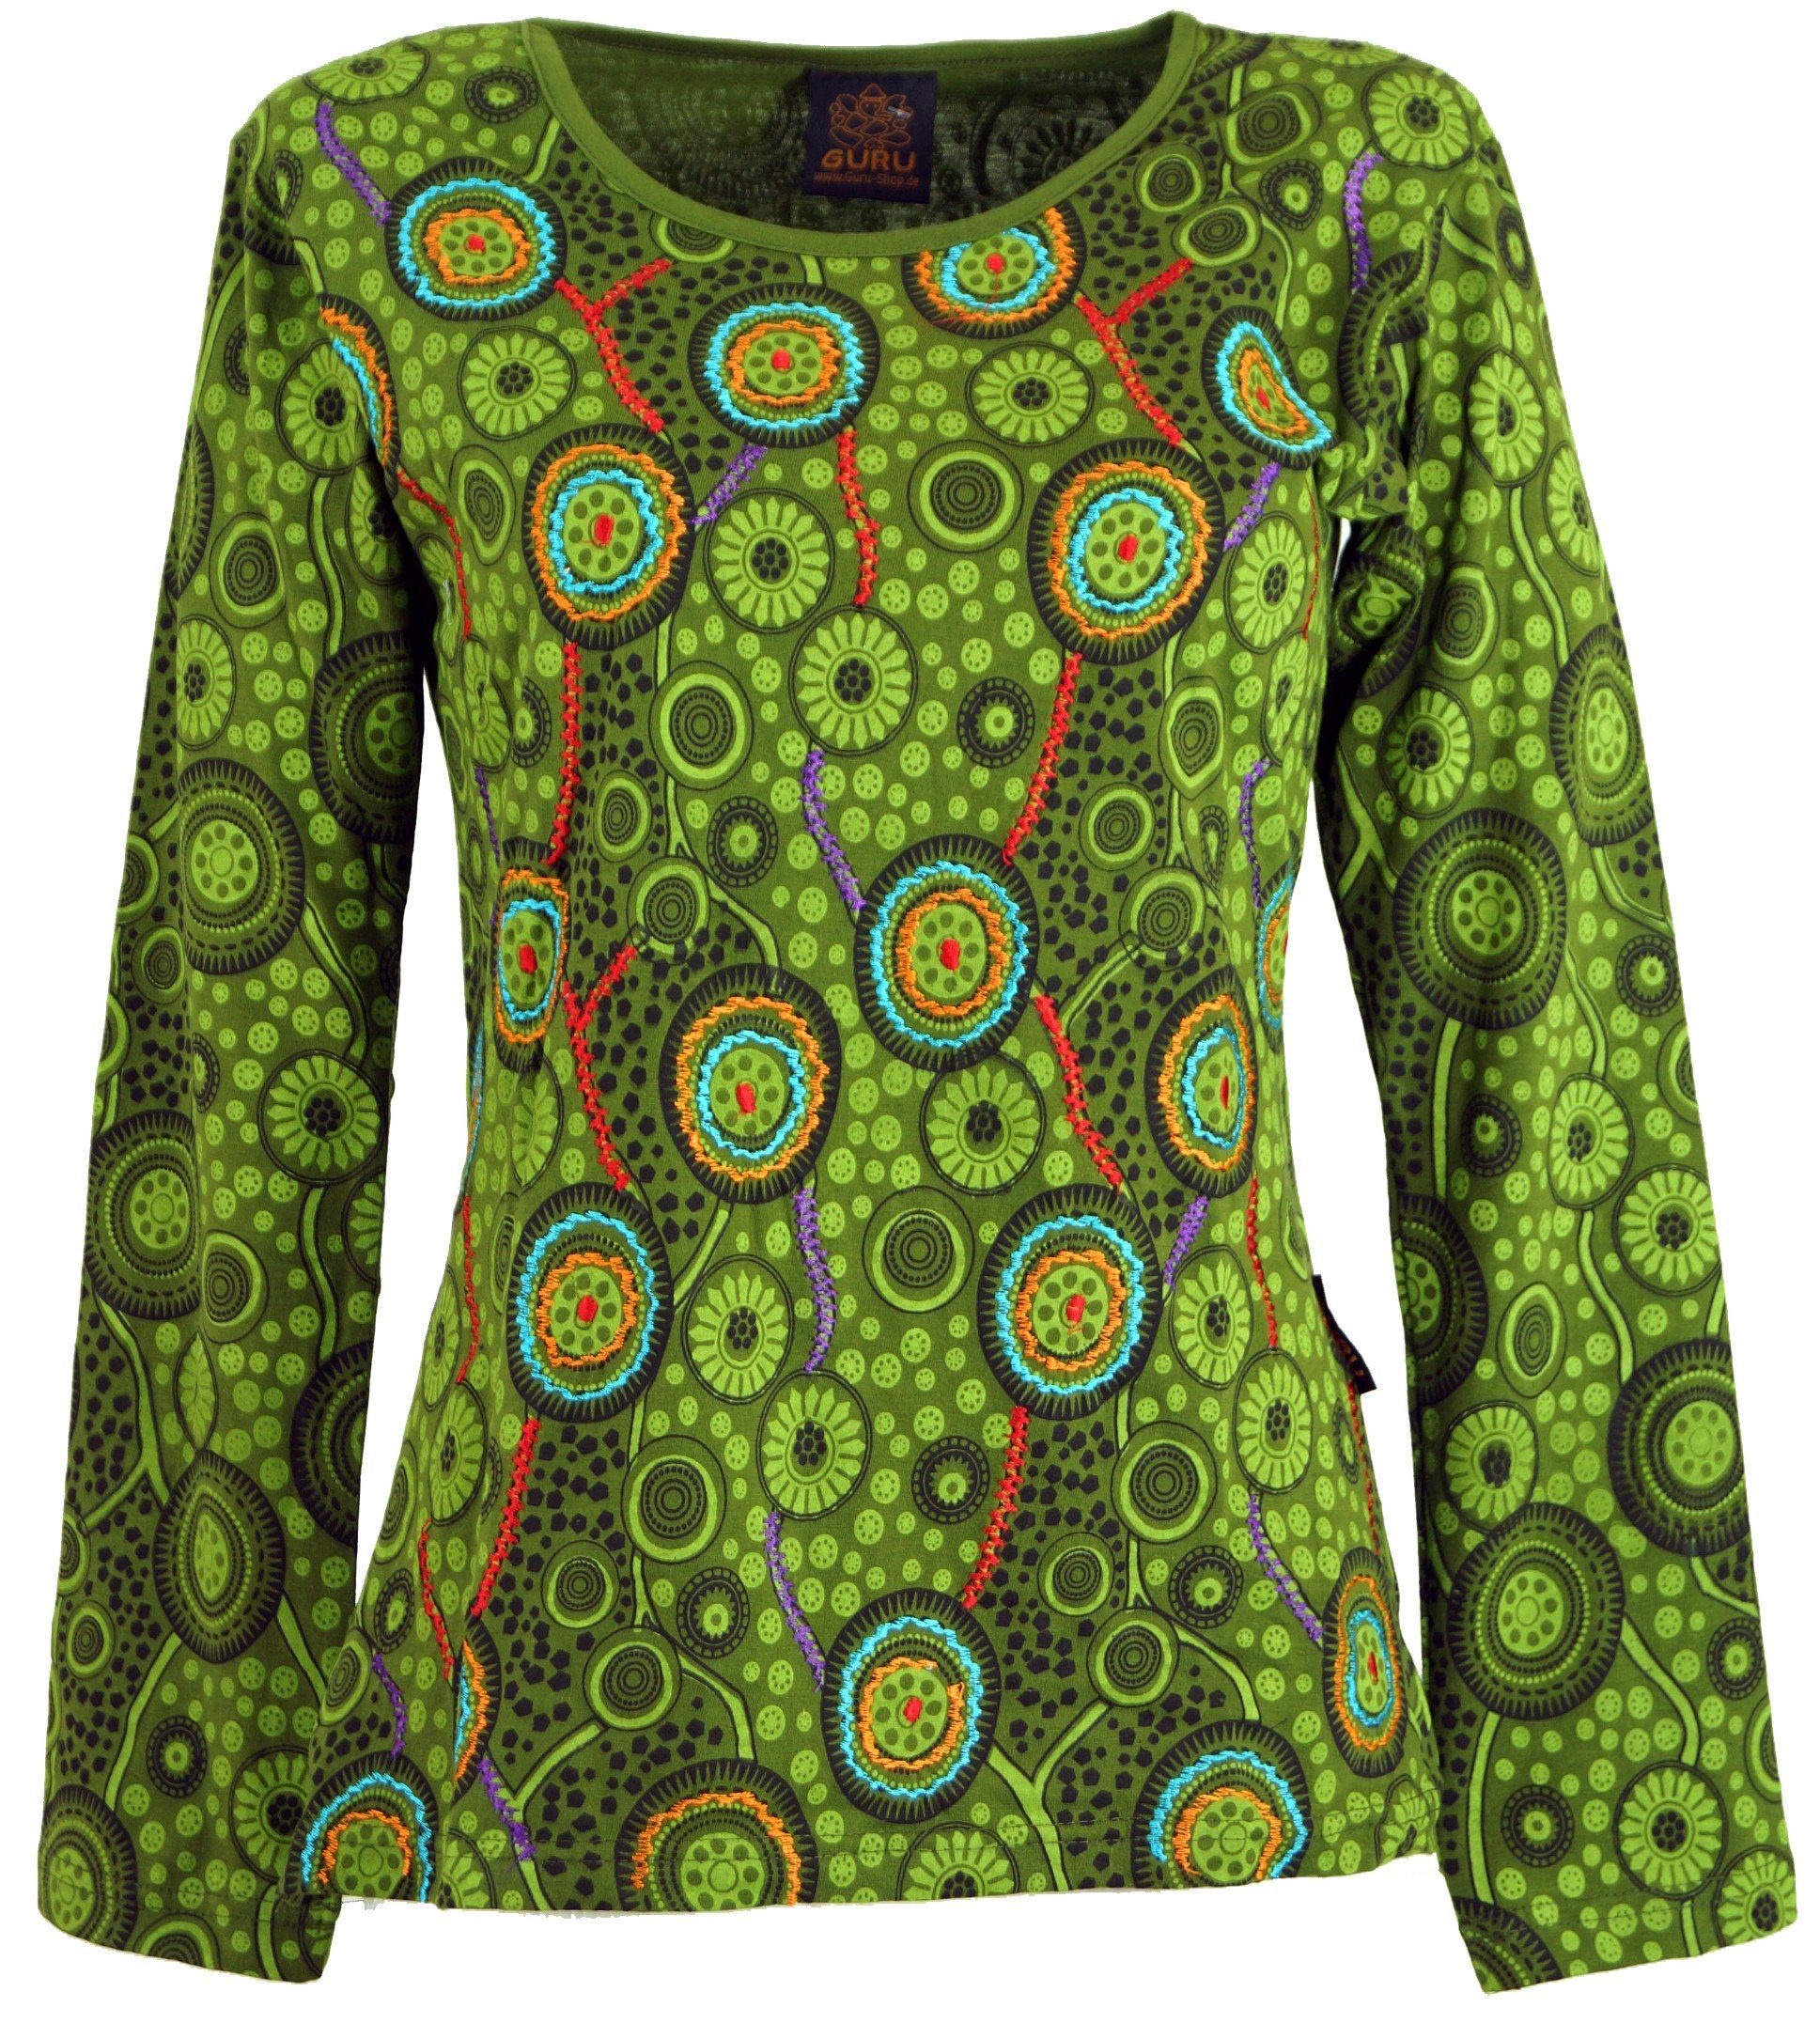 Guru-Shop Longsleeve Besticktes Langarmshirt Hippie chic Retro - grün alternative Bekleidung